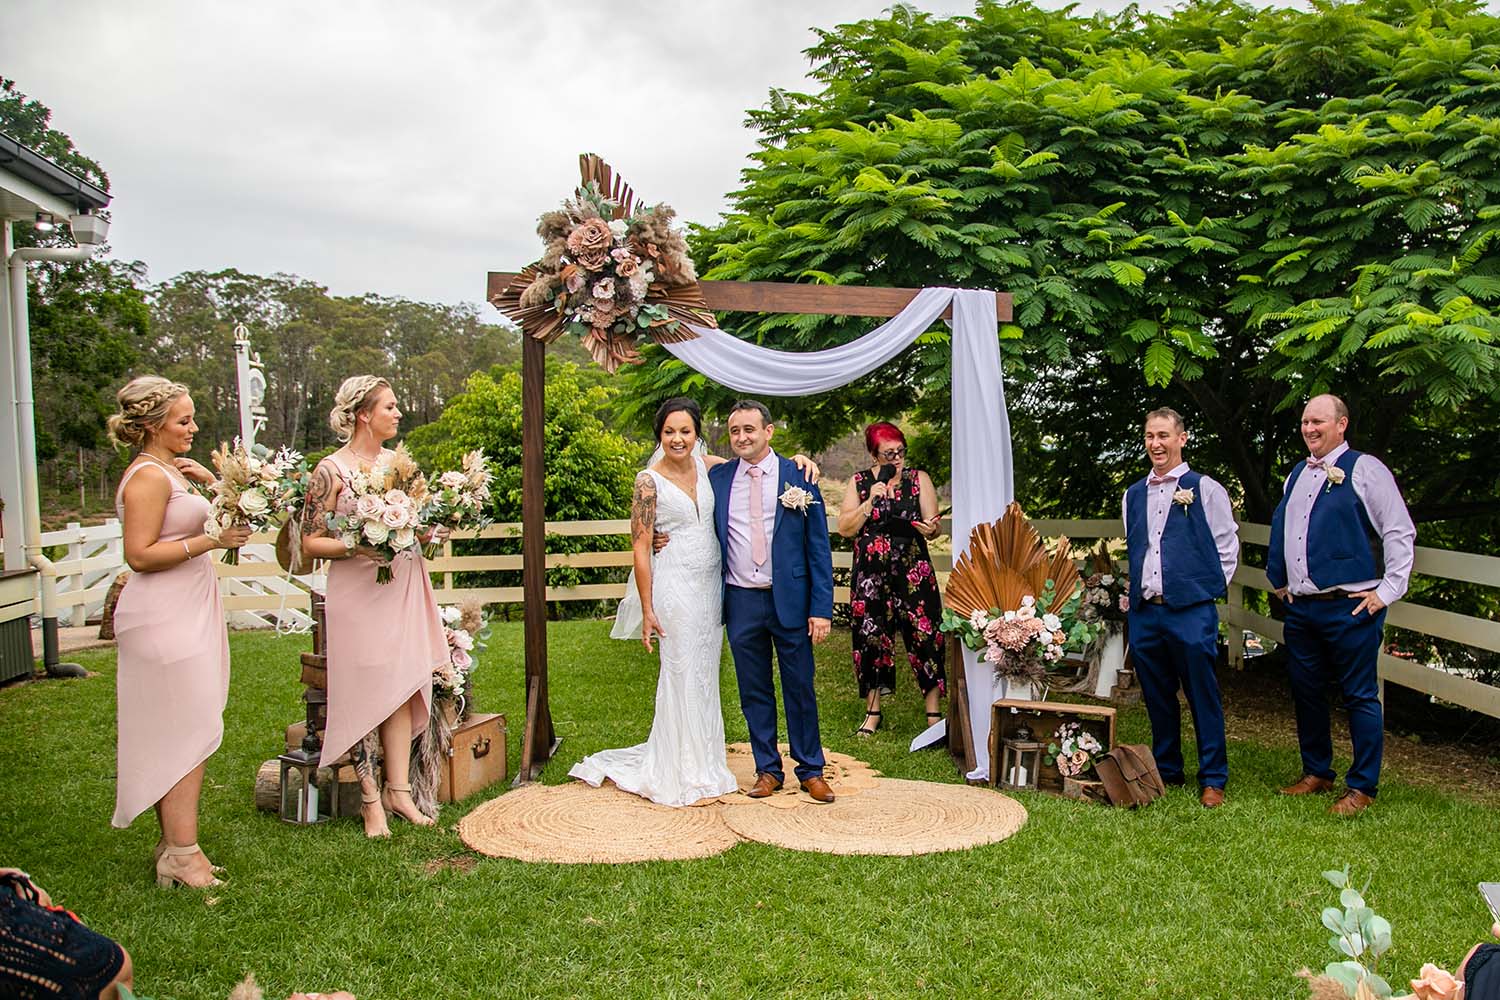 Wedding Photography - Ceremony